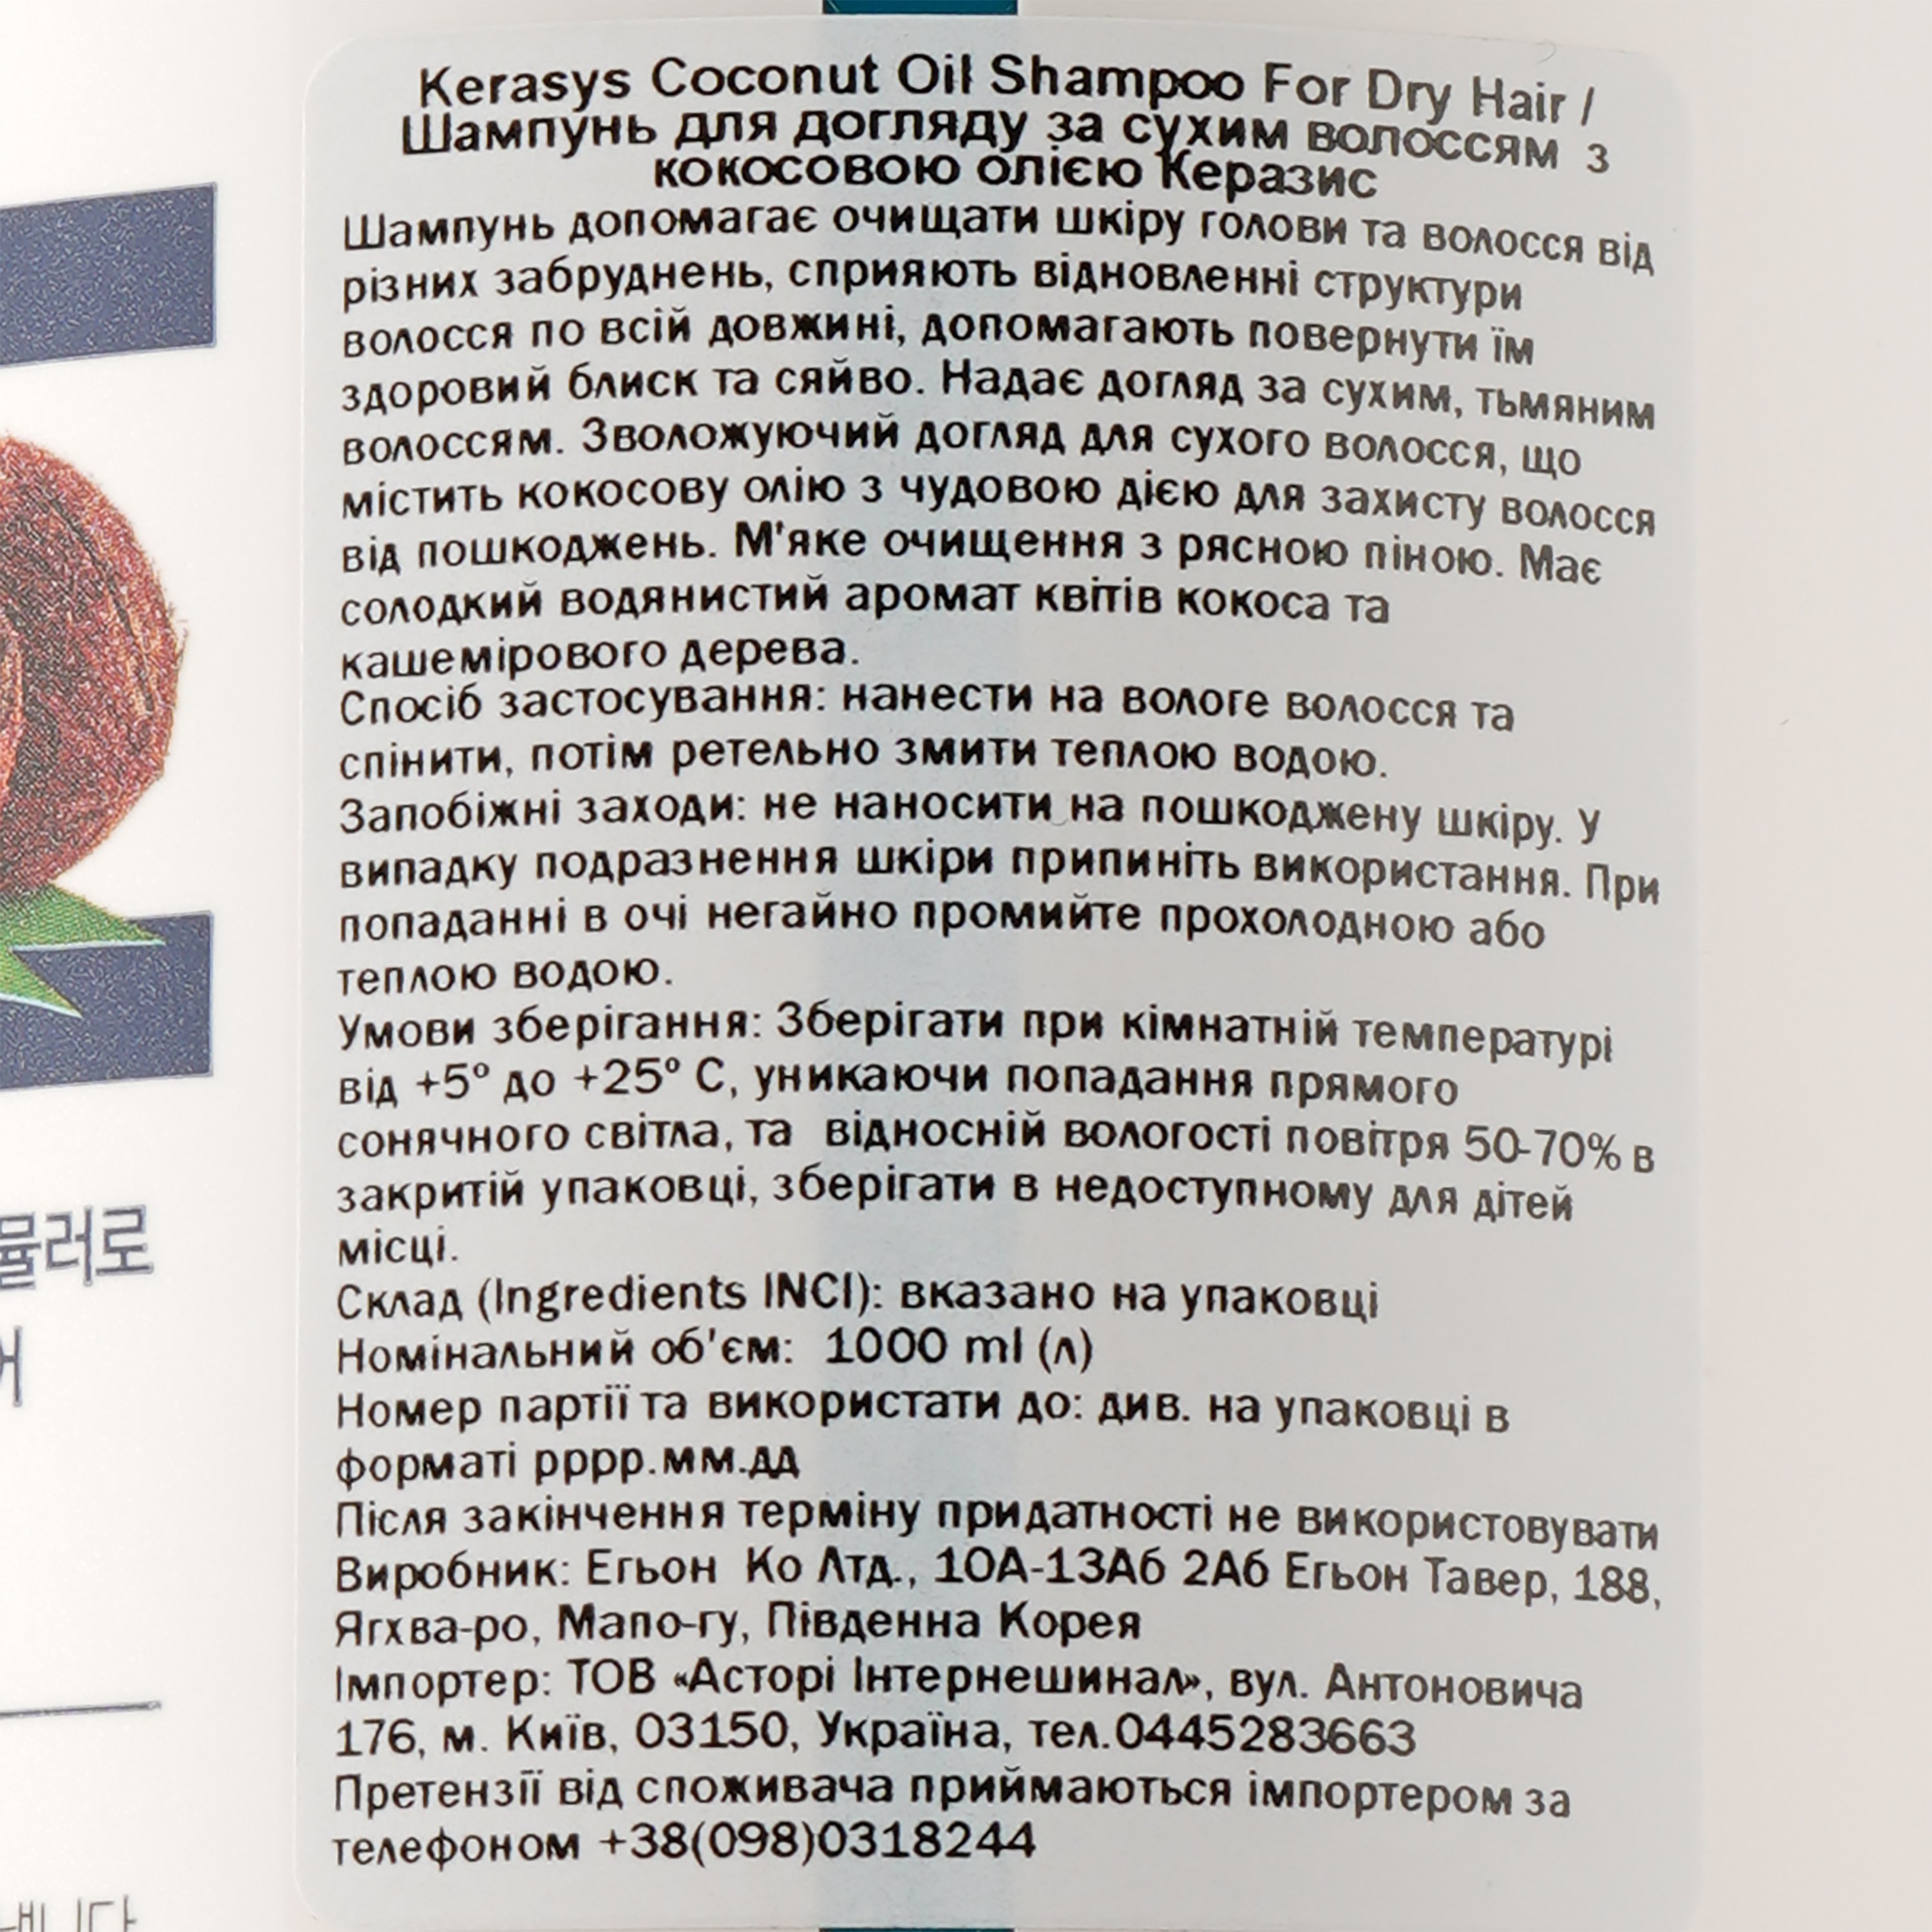 Шампунь для ухода за сухими волосами Kerasys Coconut Oil Shampoo For Dry Hair с кокосовым маслом, 1000 мл - фото 3